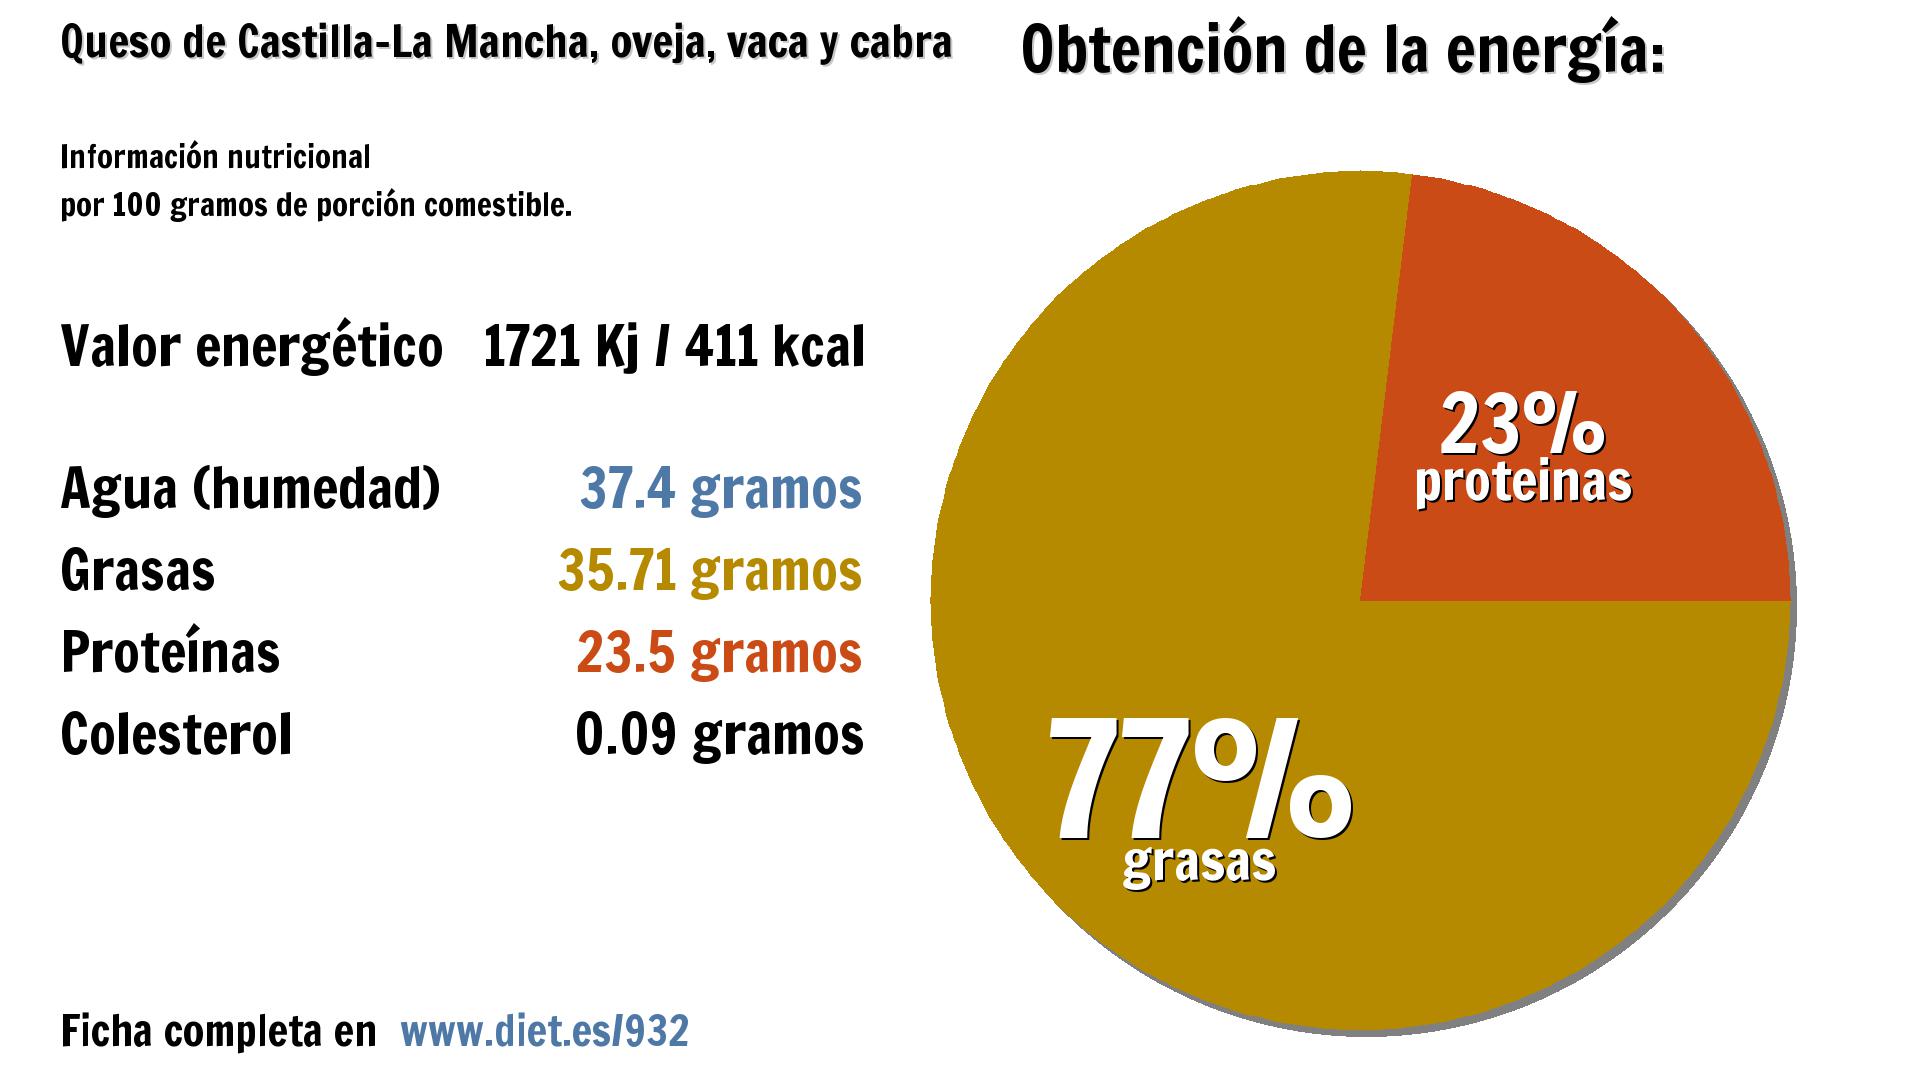 Queso de Castilla-La Mancha, oveja, vaca y cabra: energía 1721 Kj, agua 37 g., grasas 36 g. y proteínas 24 g.